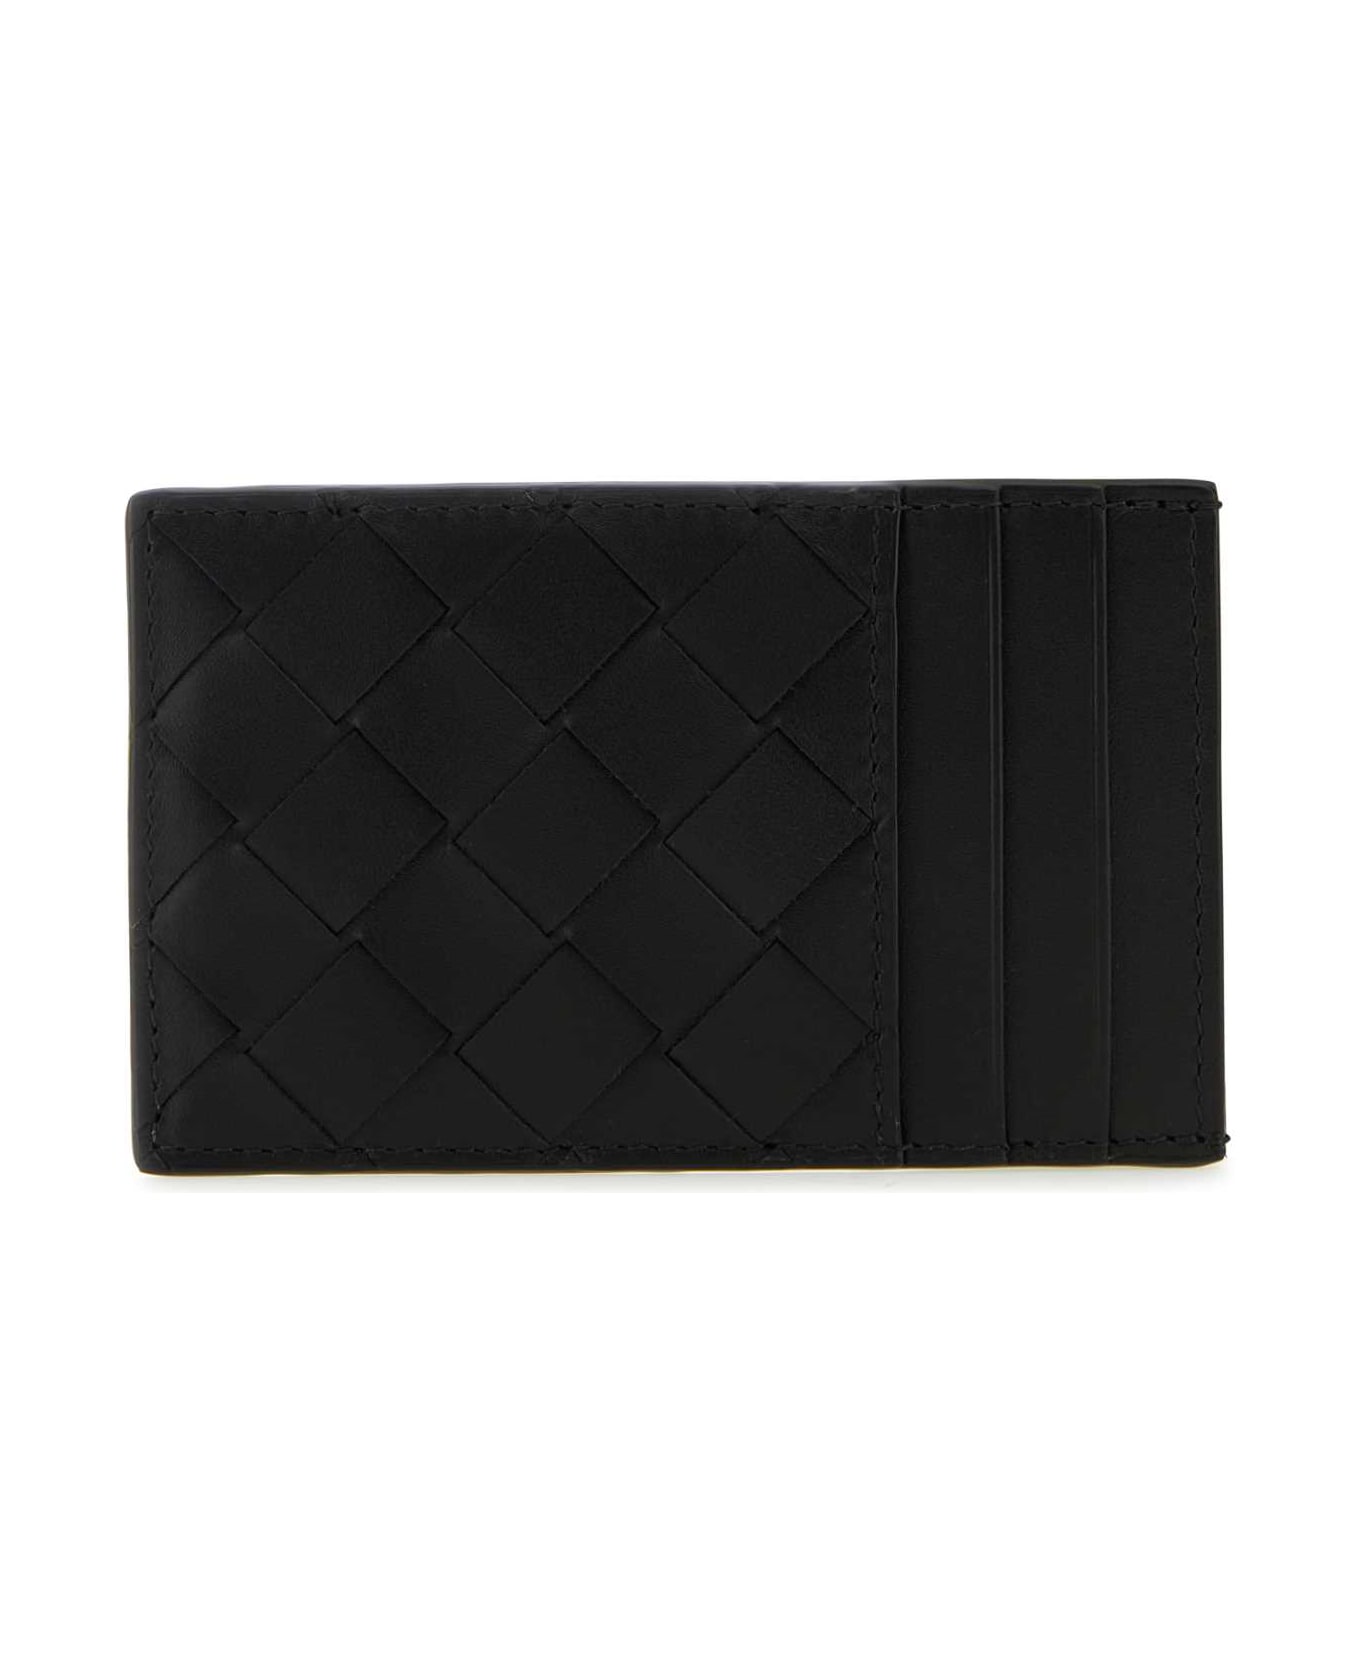 Bottega Veneta Black Leather Cardholder - BLACKSILVER